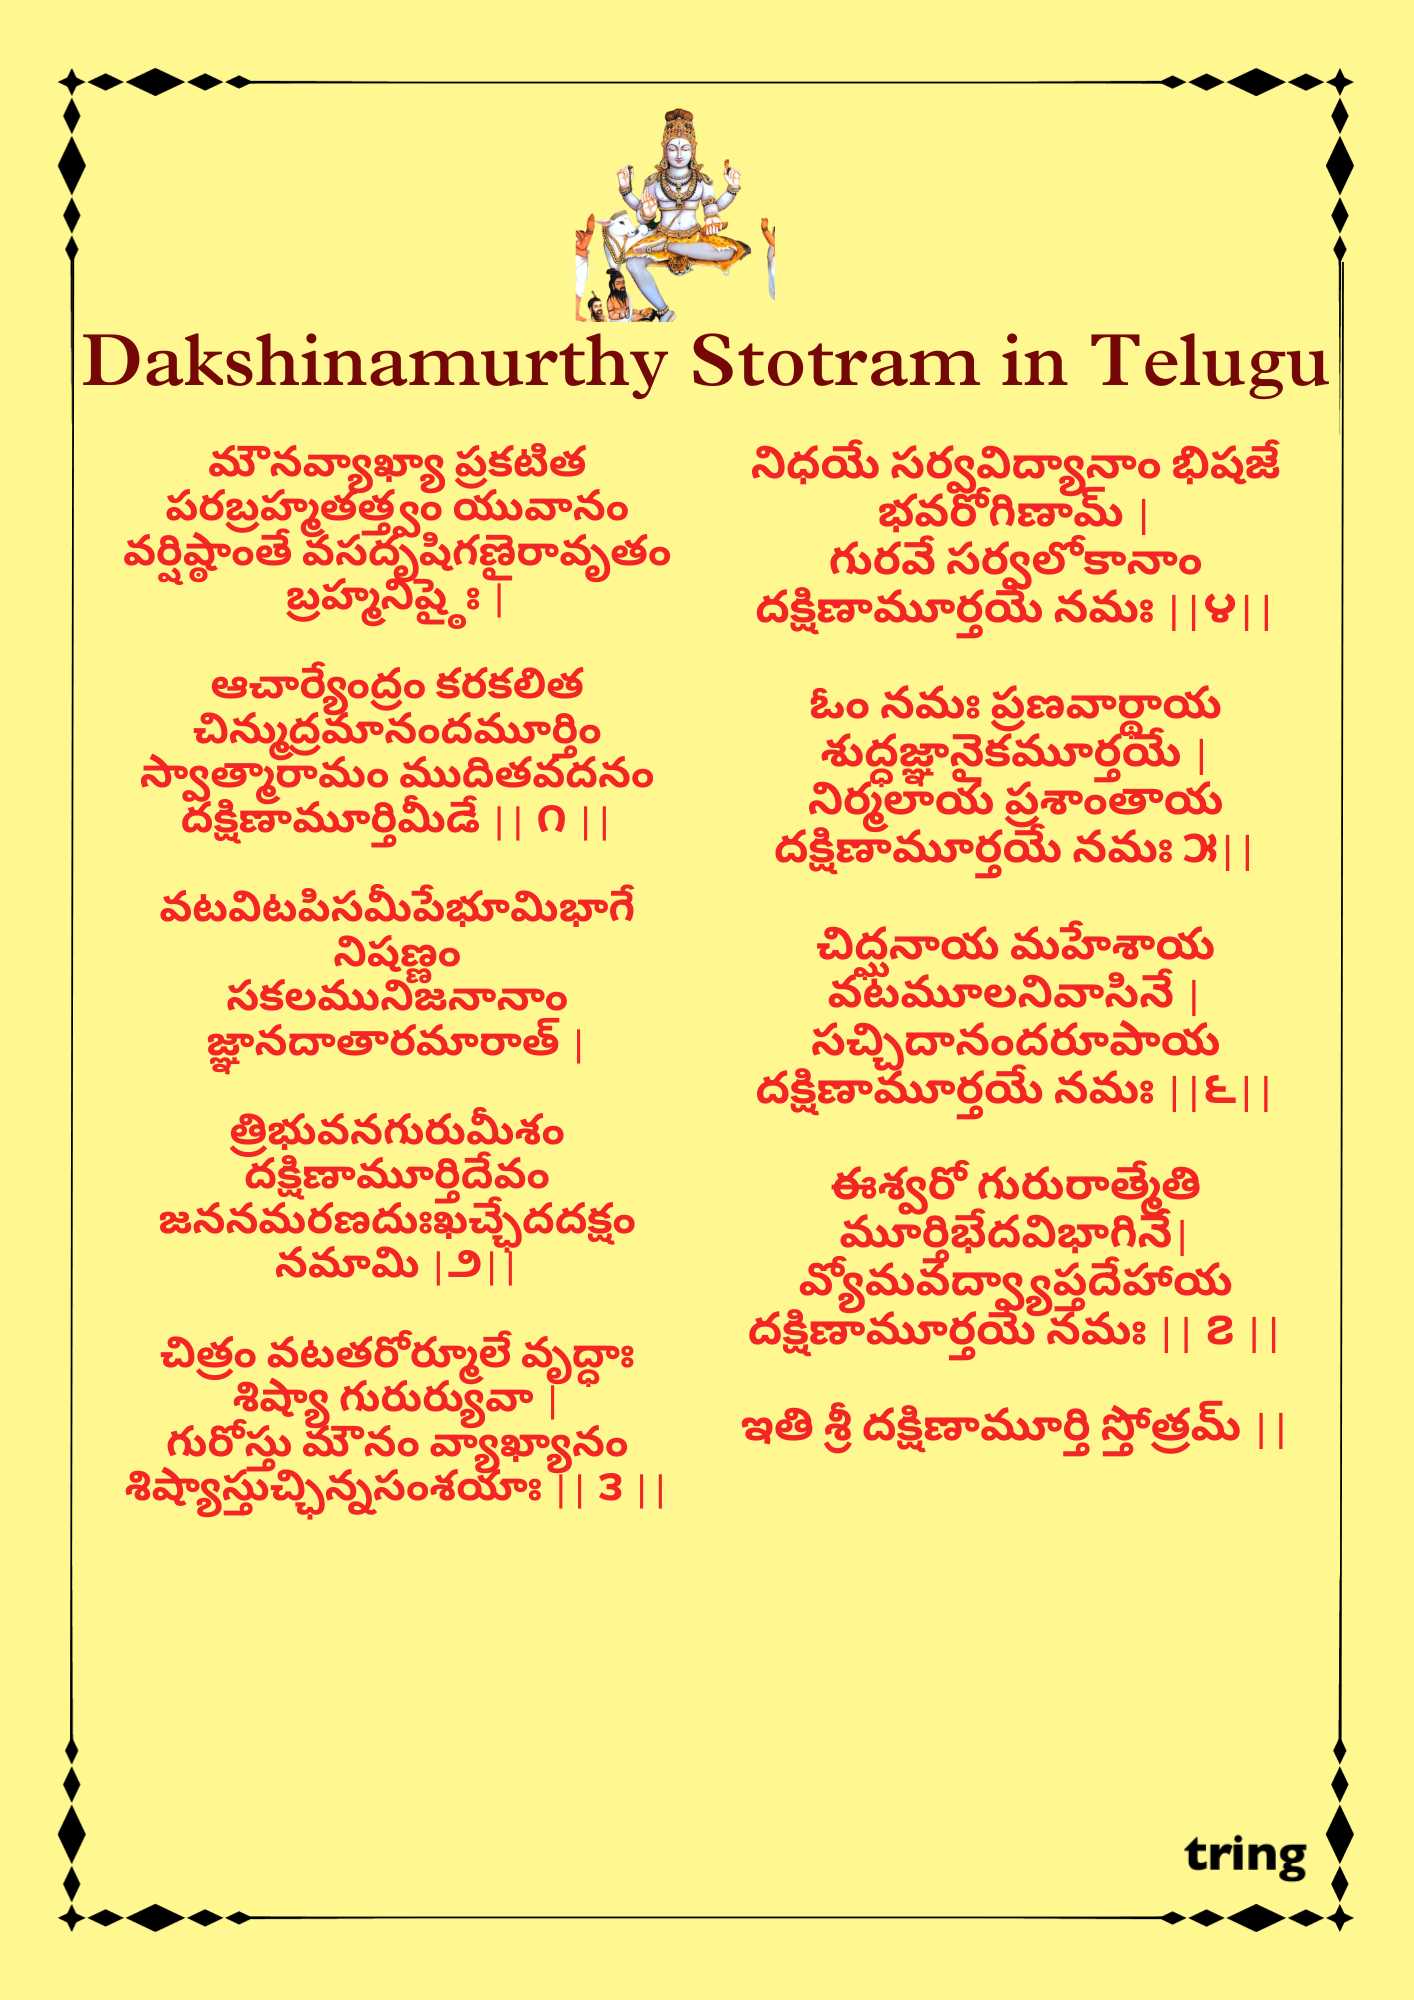 Dakshinamurthy Stotram Telugu Images 